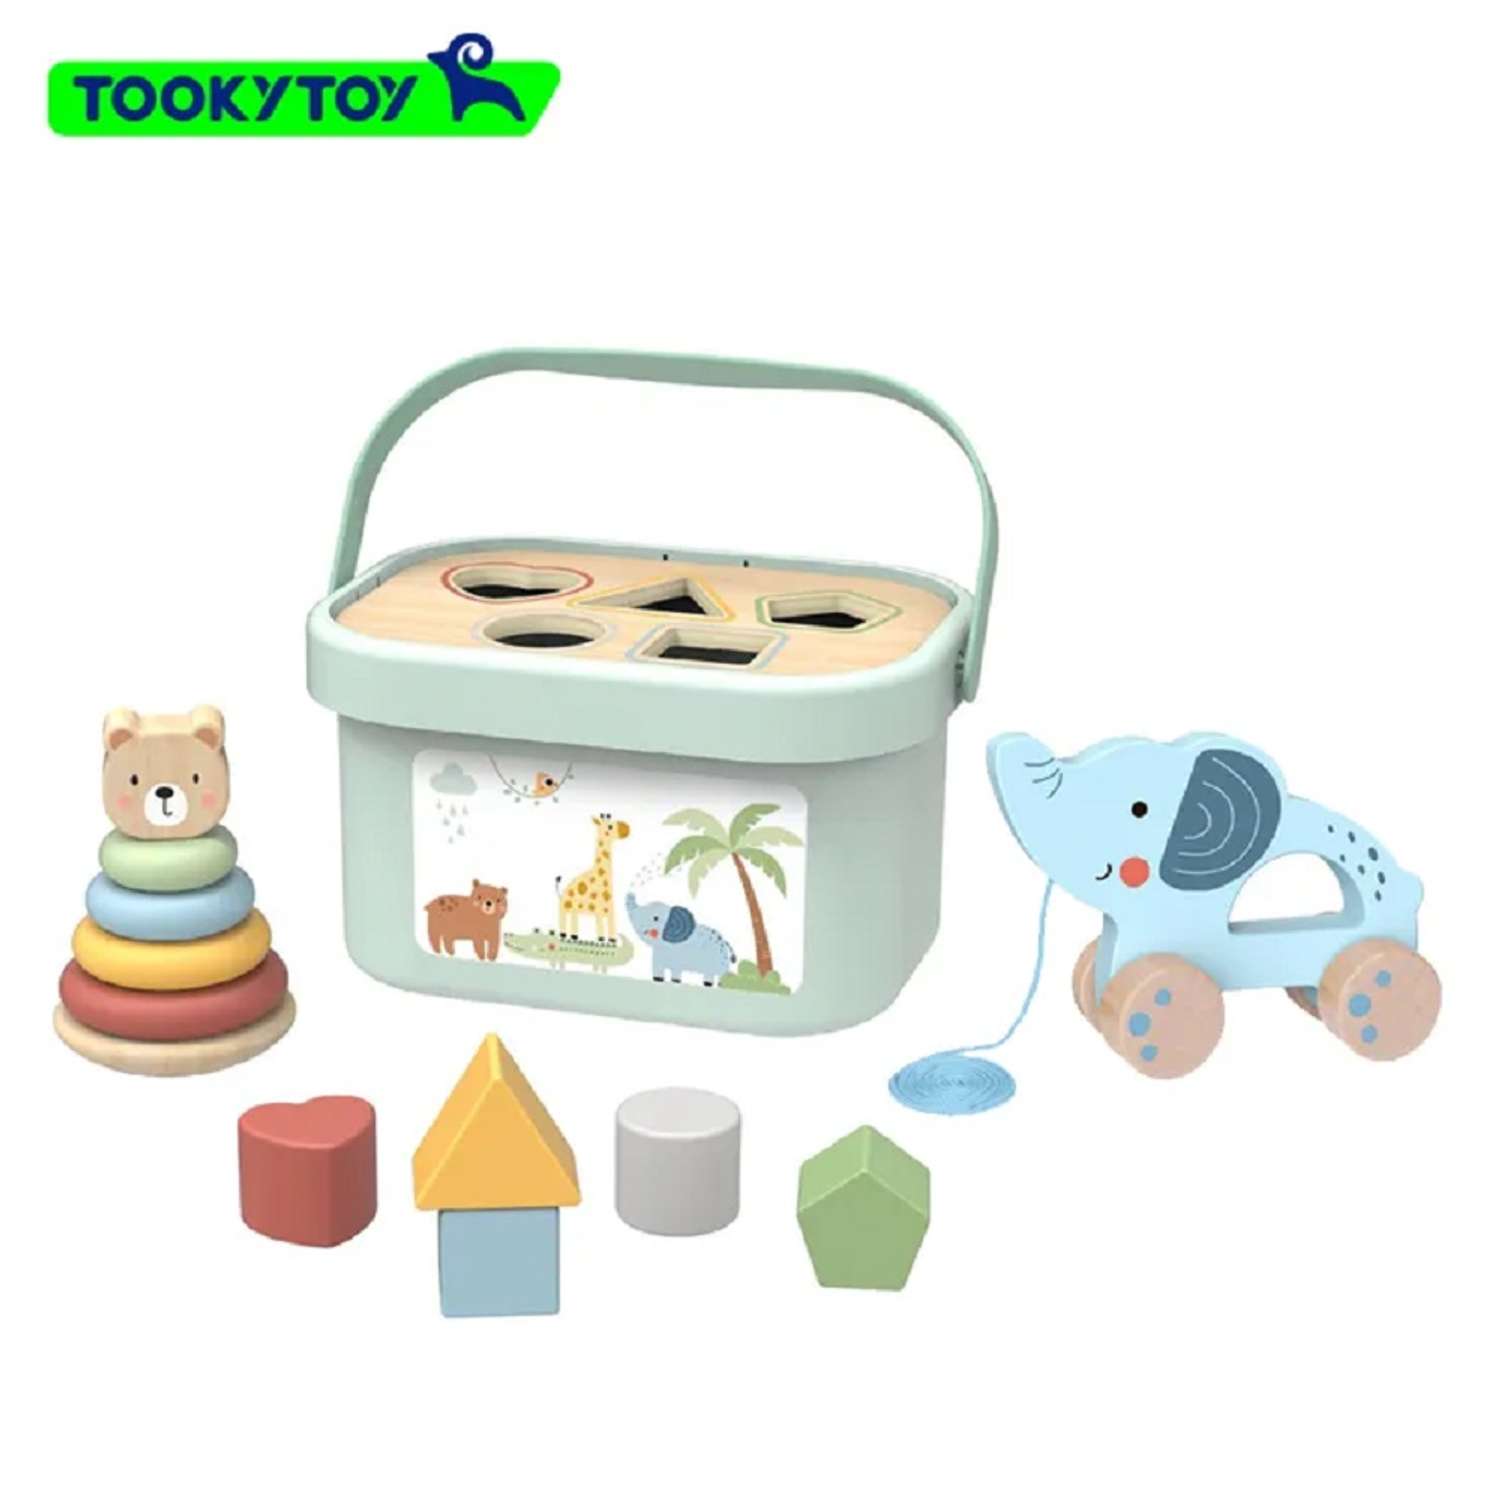 Игровой набор Tooky Toy TJ011 для малыша пирамидка каталка сортер - фото 1